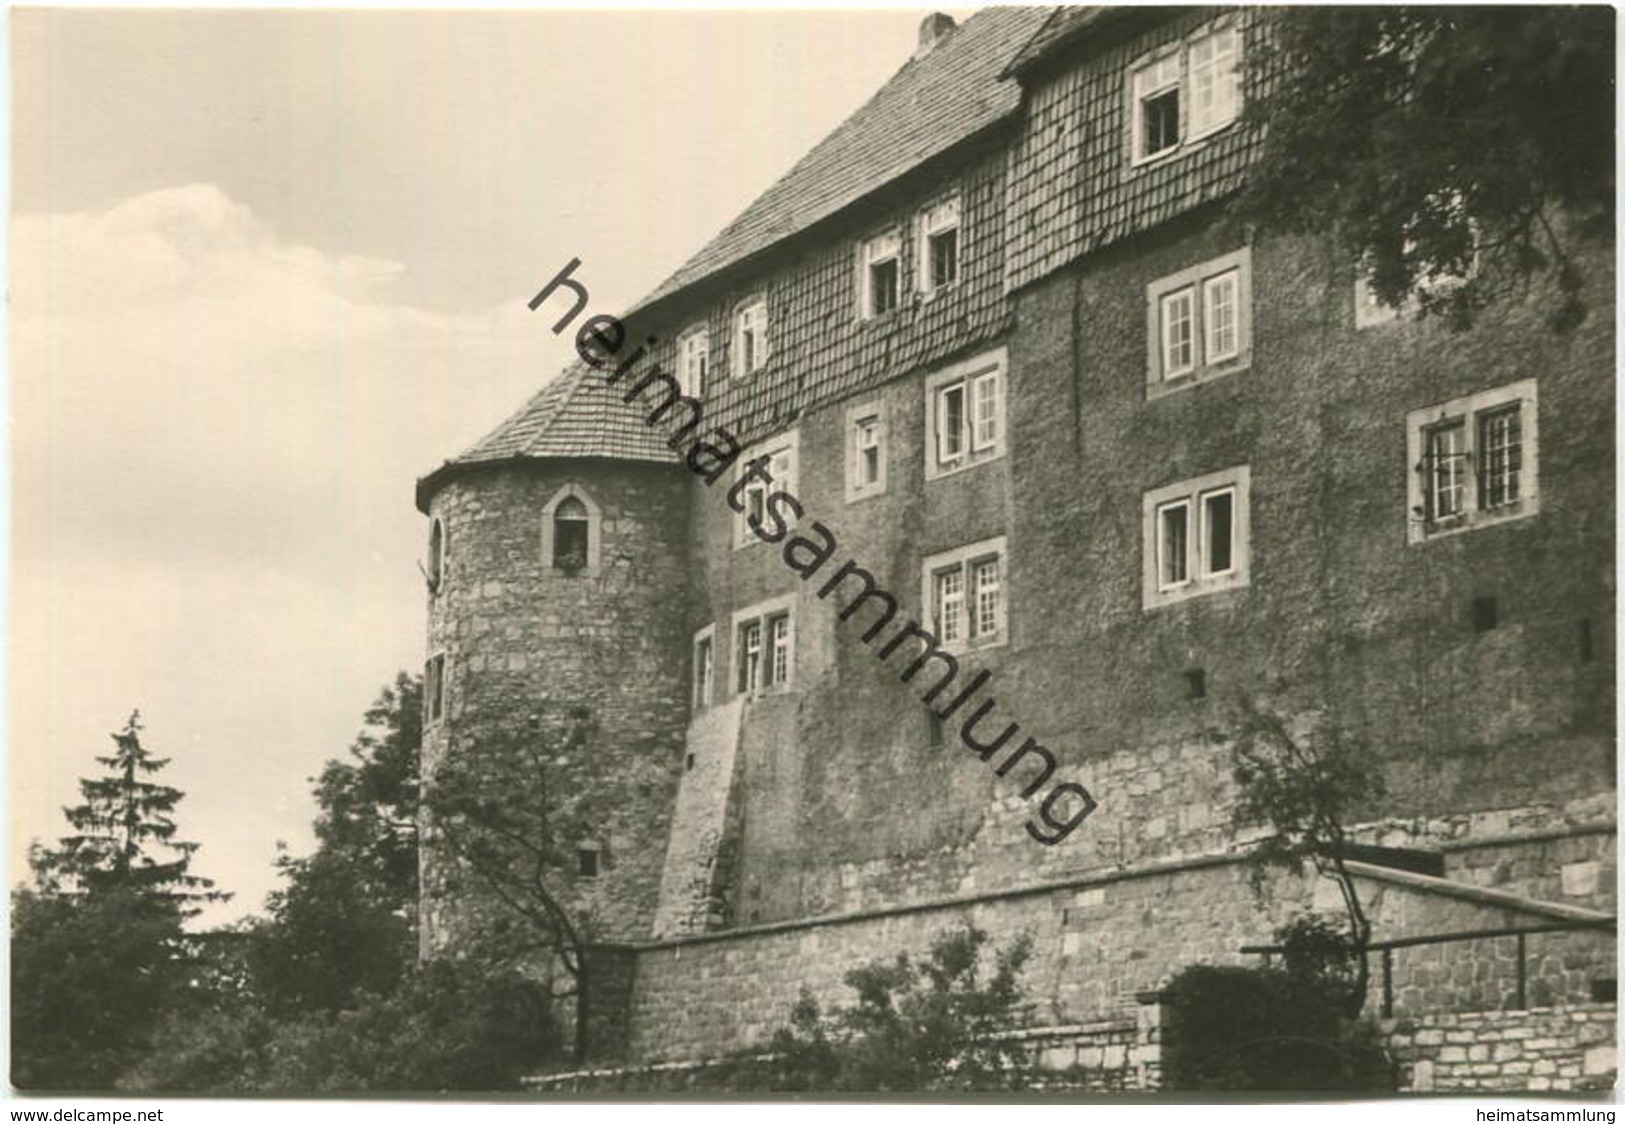 Worbis - Schloss Bodenstein - Foto-AK Grossformat - Verlag Konsum Fotocolor Magdeburg - Worbis